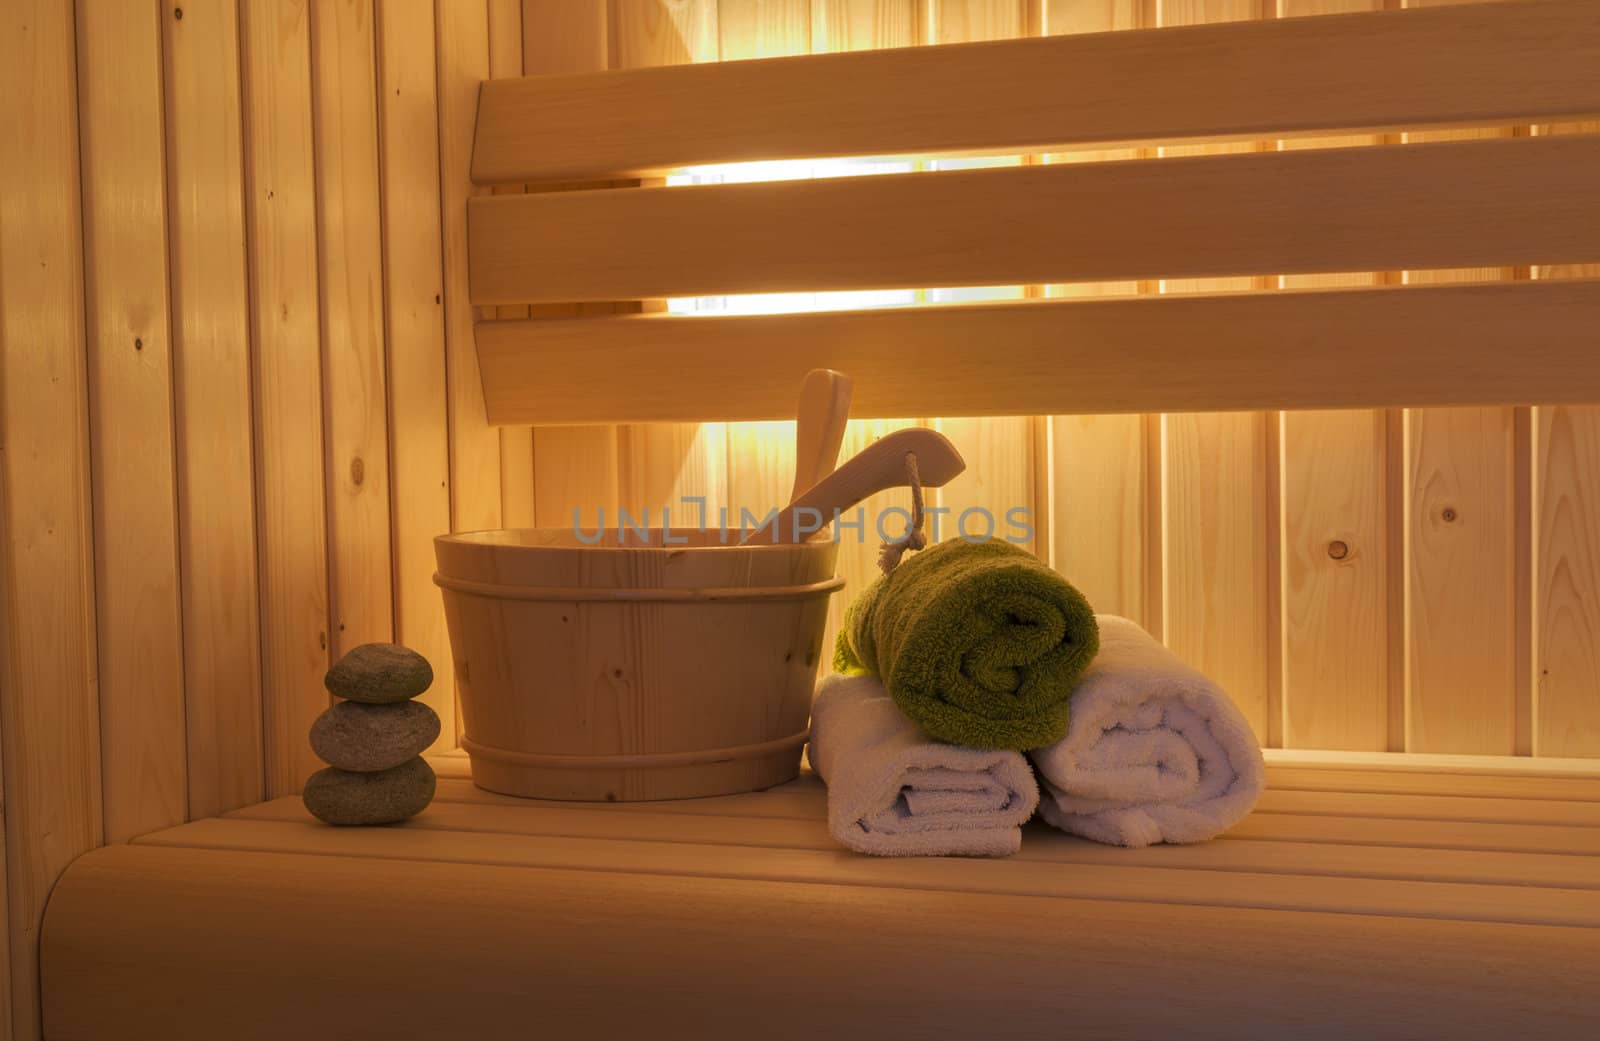 sauna interior by compuinfoto